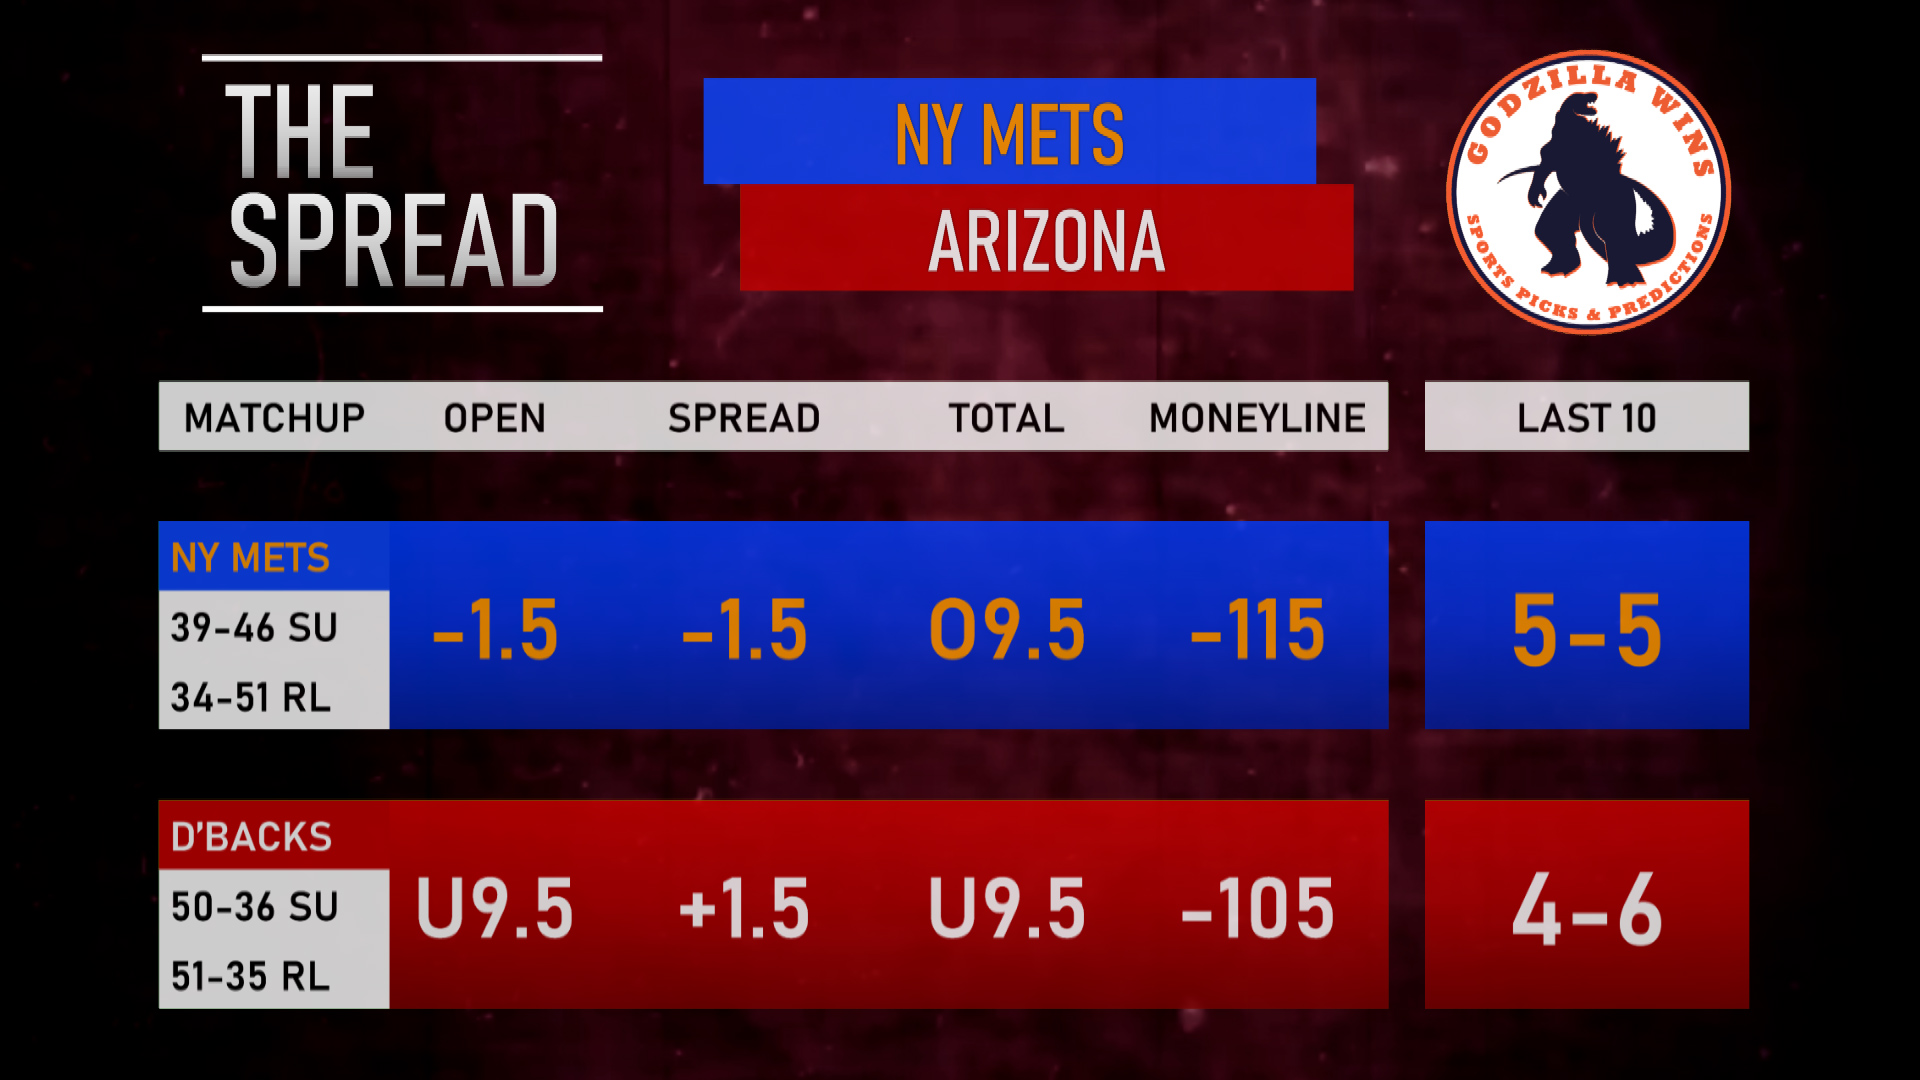 New York Mets vs. Arizona Diamondbacks spread and odds.